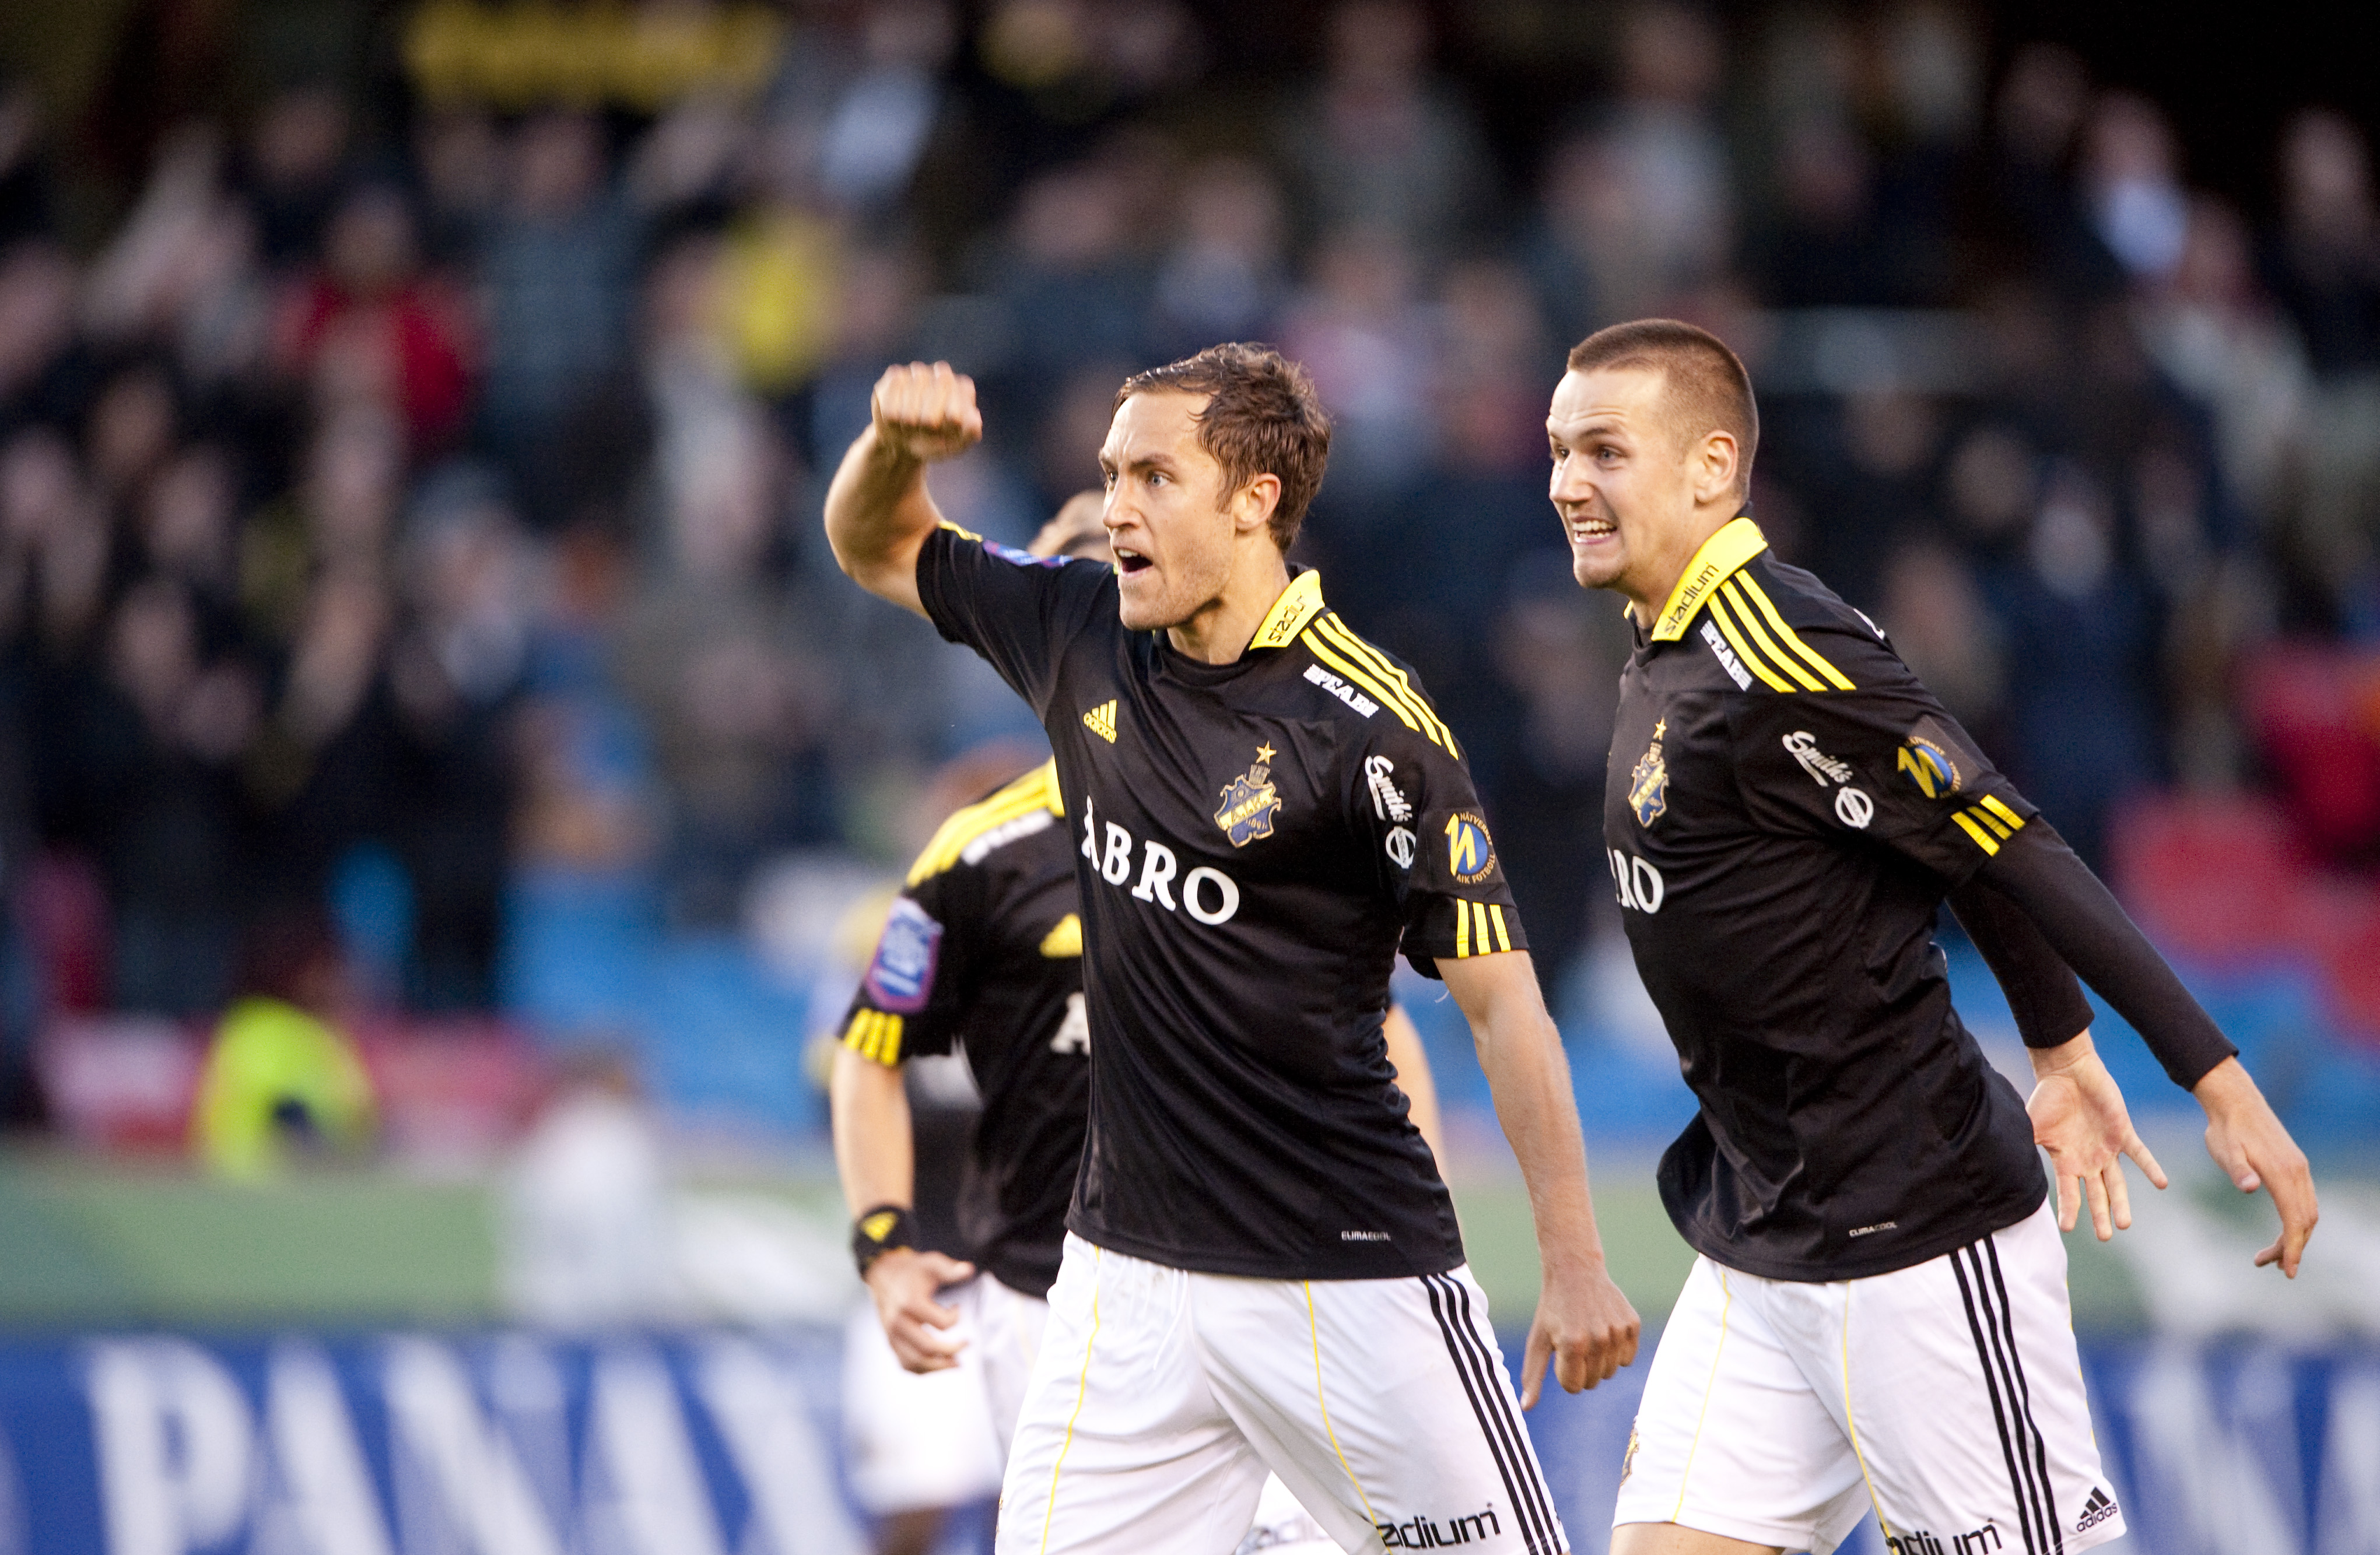 AIK:s mittback var däremot inte lika glad som på den här bilden efter att ha blivit tunnlad.